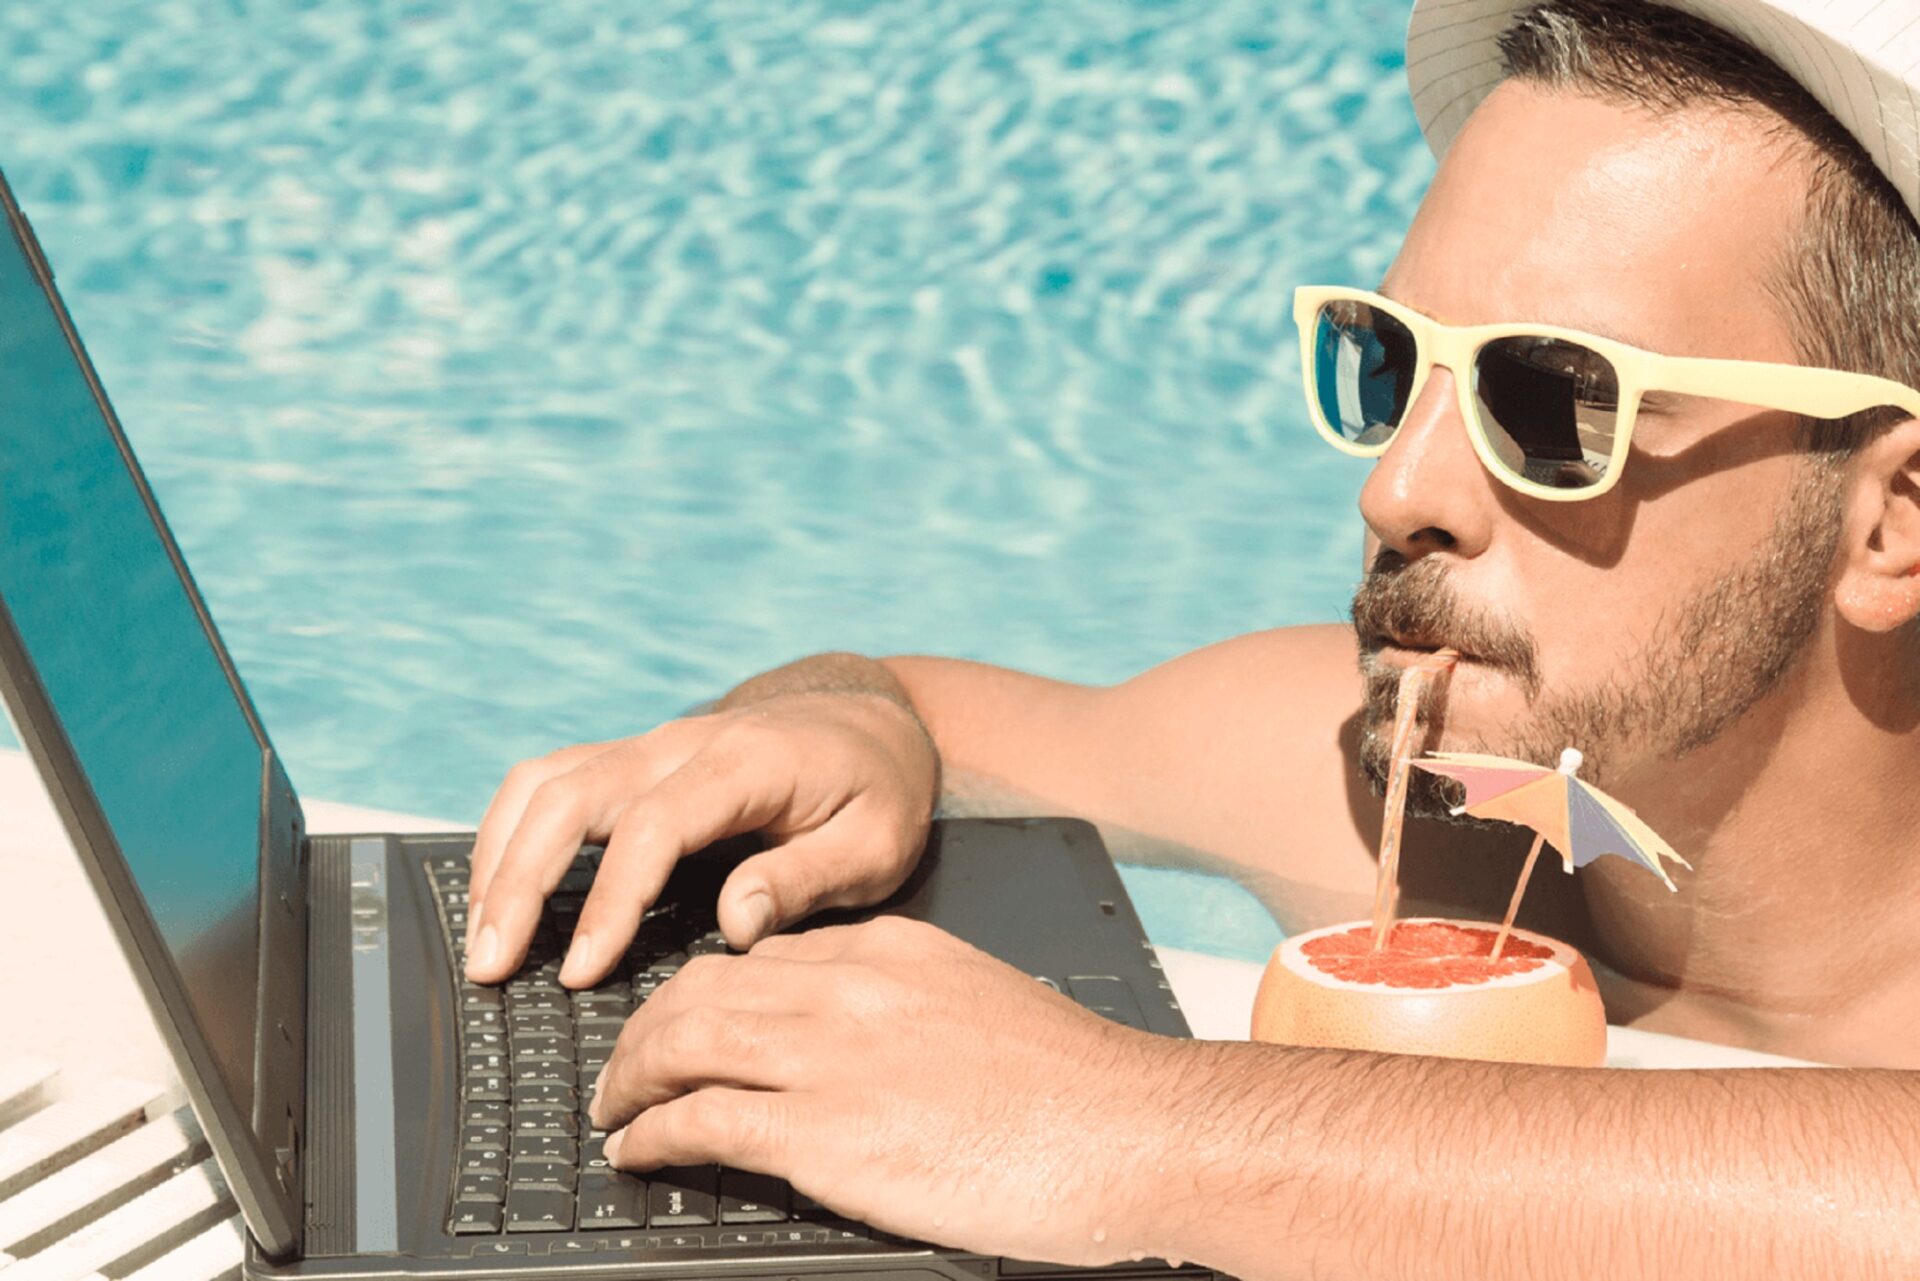 Нужен фрилансер. Бизнесмен на отдыхе. Мужчина с ноутбуком на море. Человек с ноутбуком на пляже. Бизнесмен на пляже с ноутбуком.